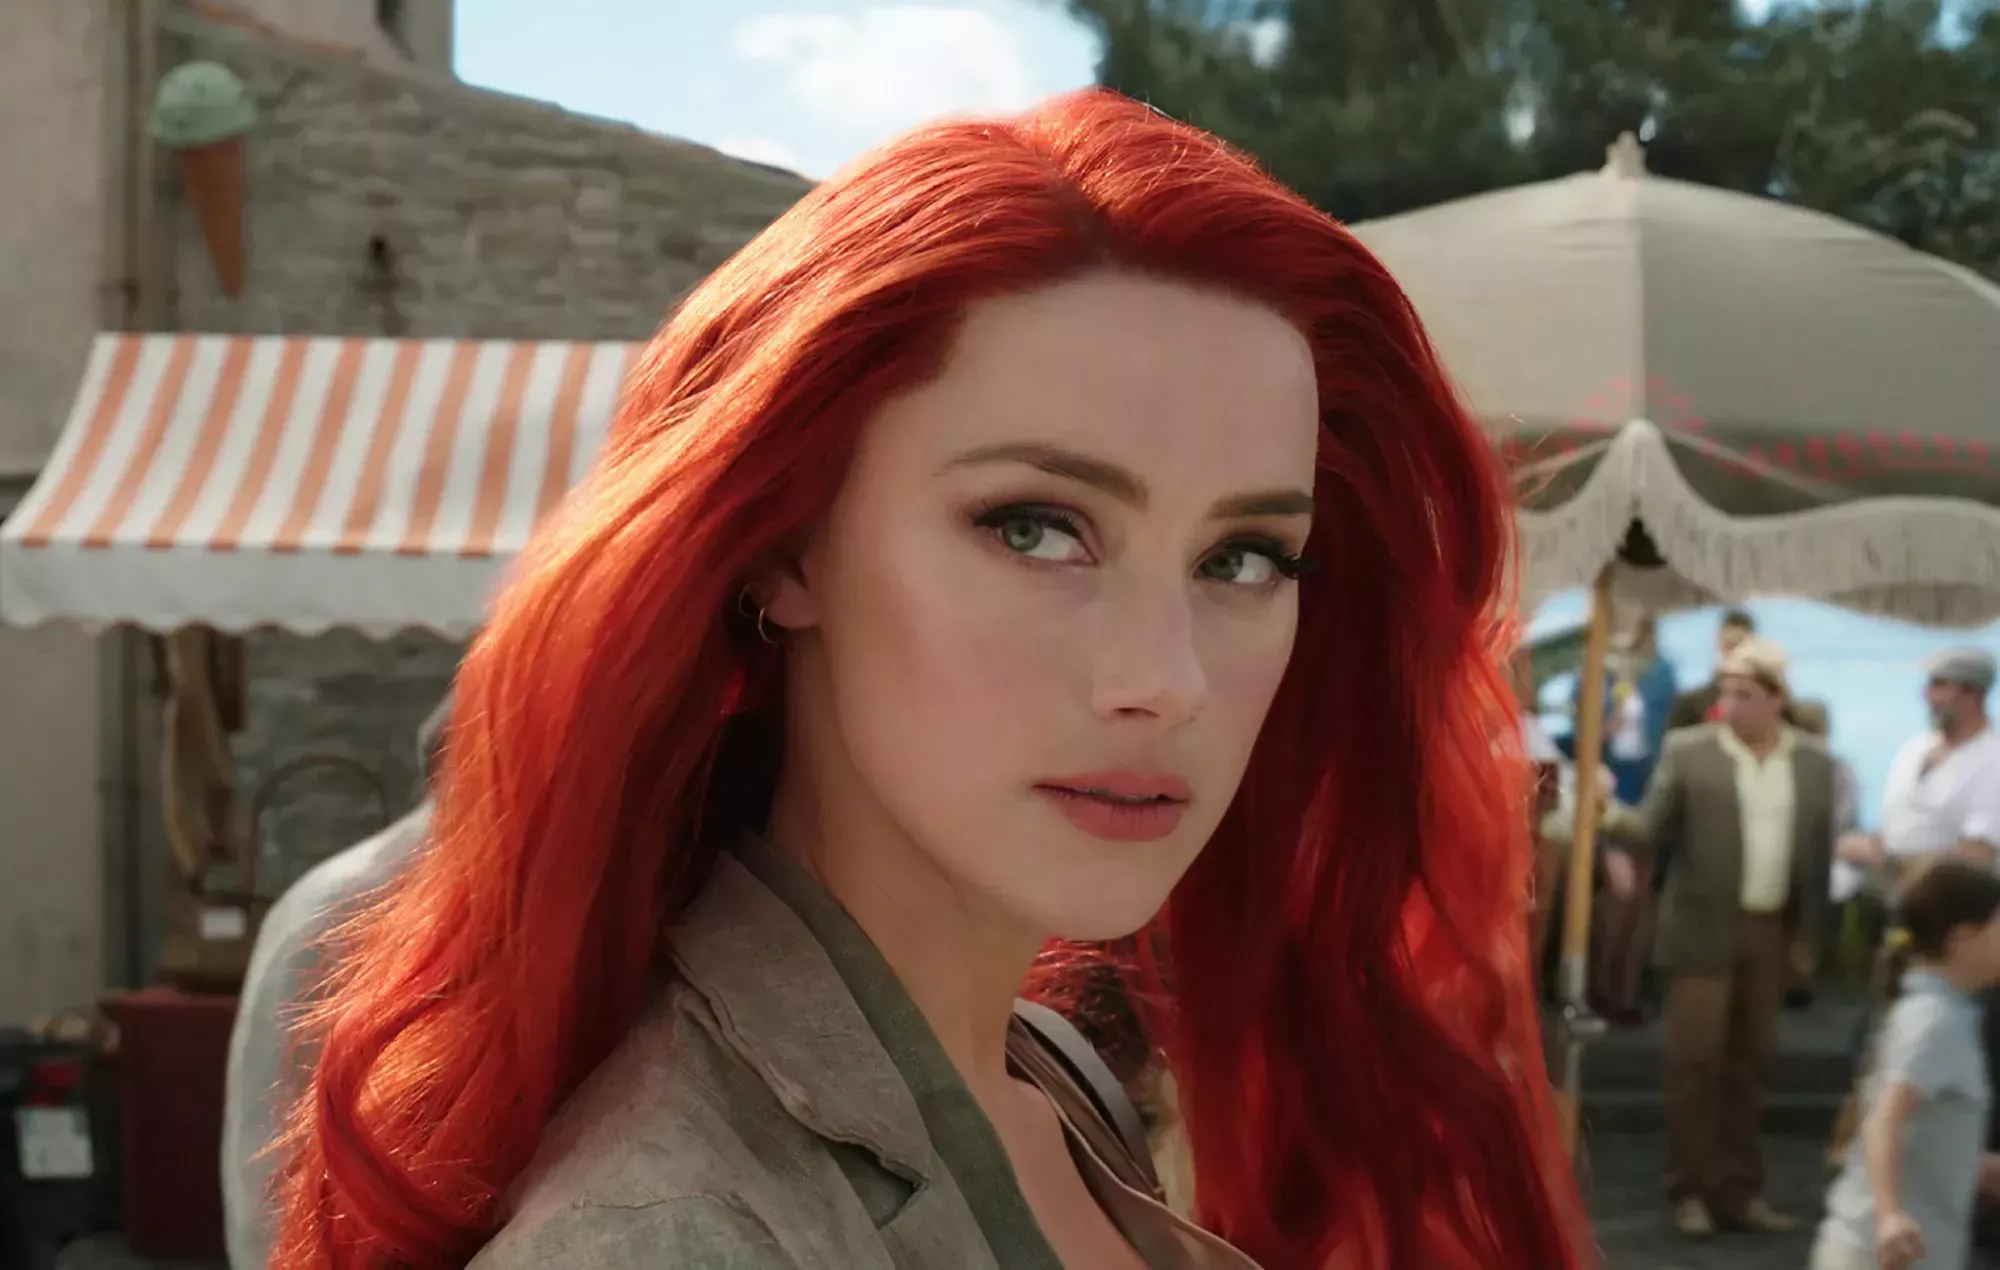 La petición para despedir a Amber Heard de 'Aquaman 2' alcanza los dos millones de firmas